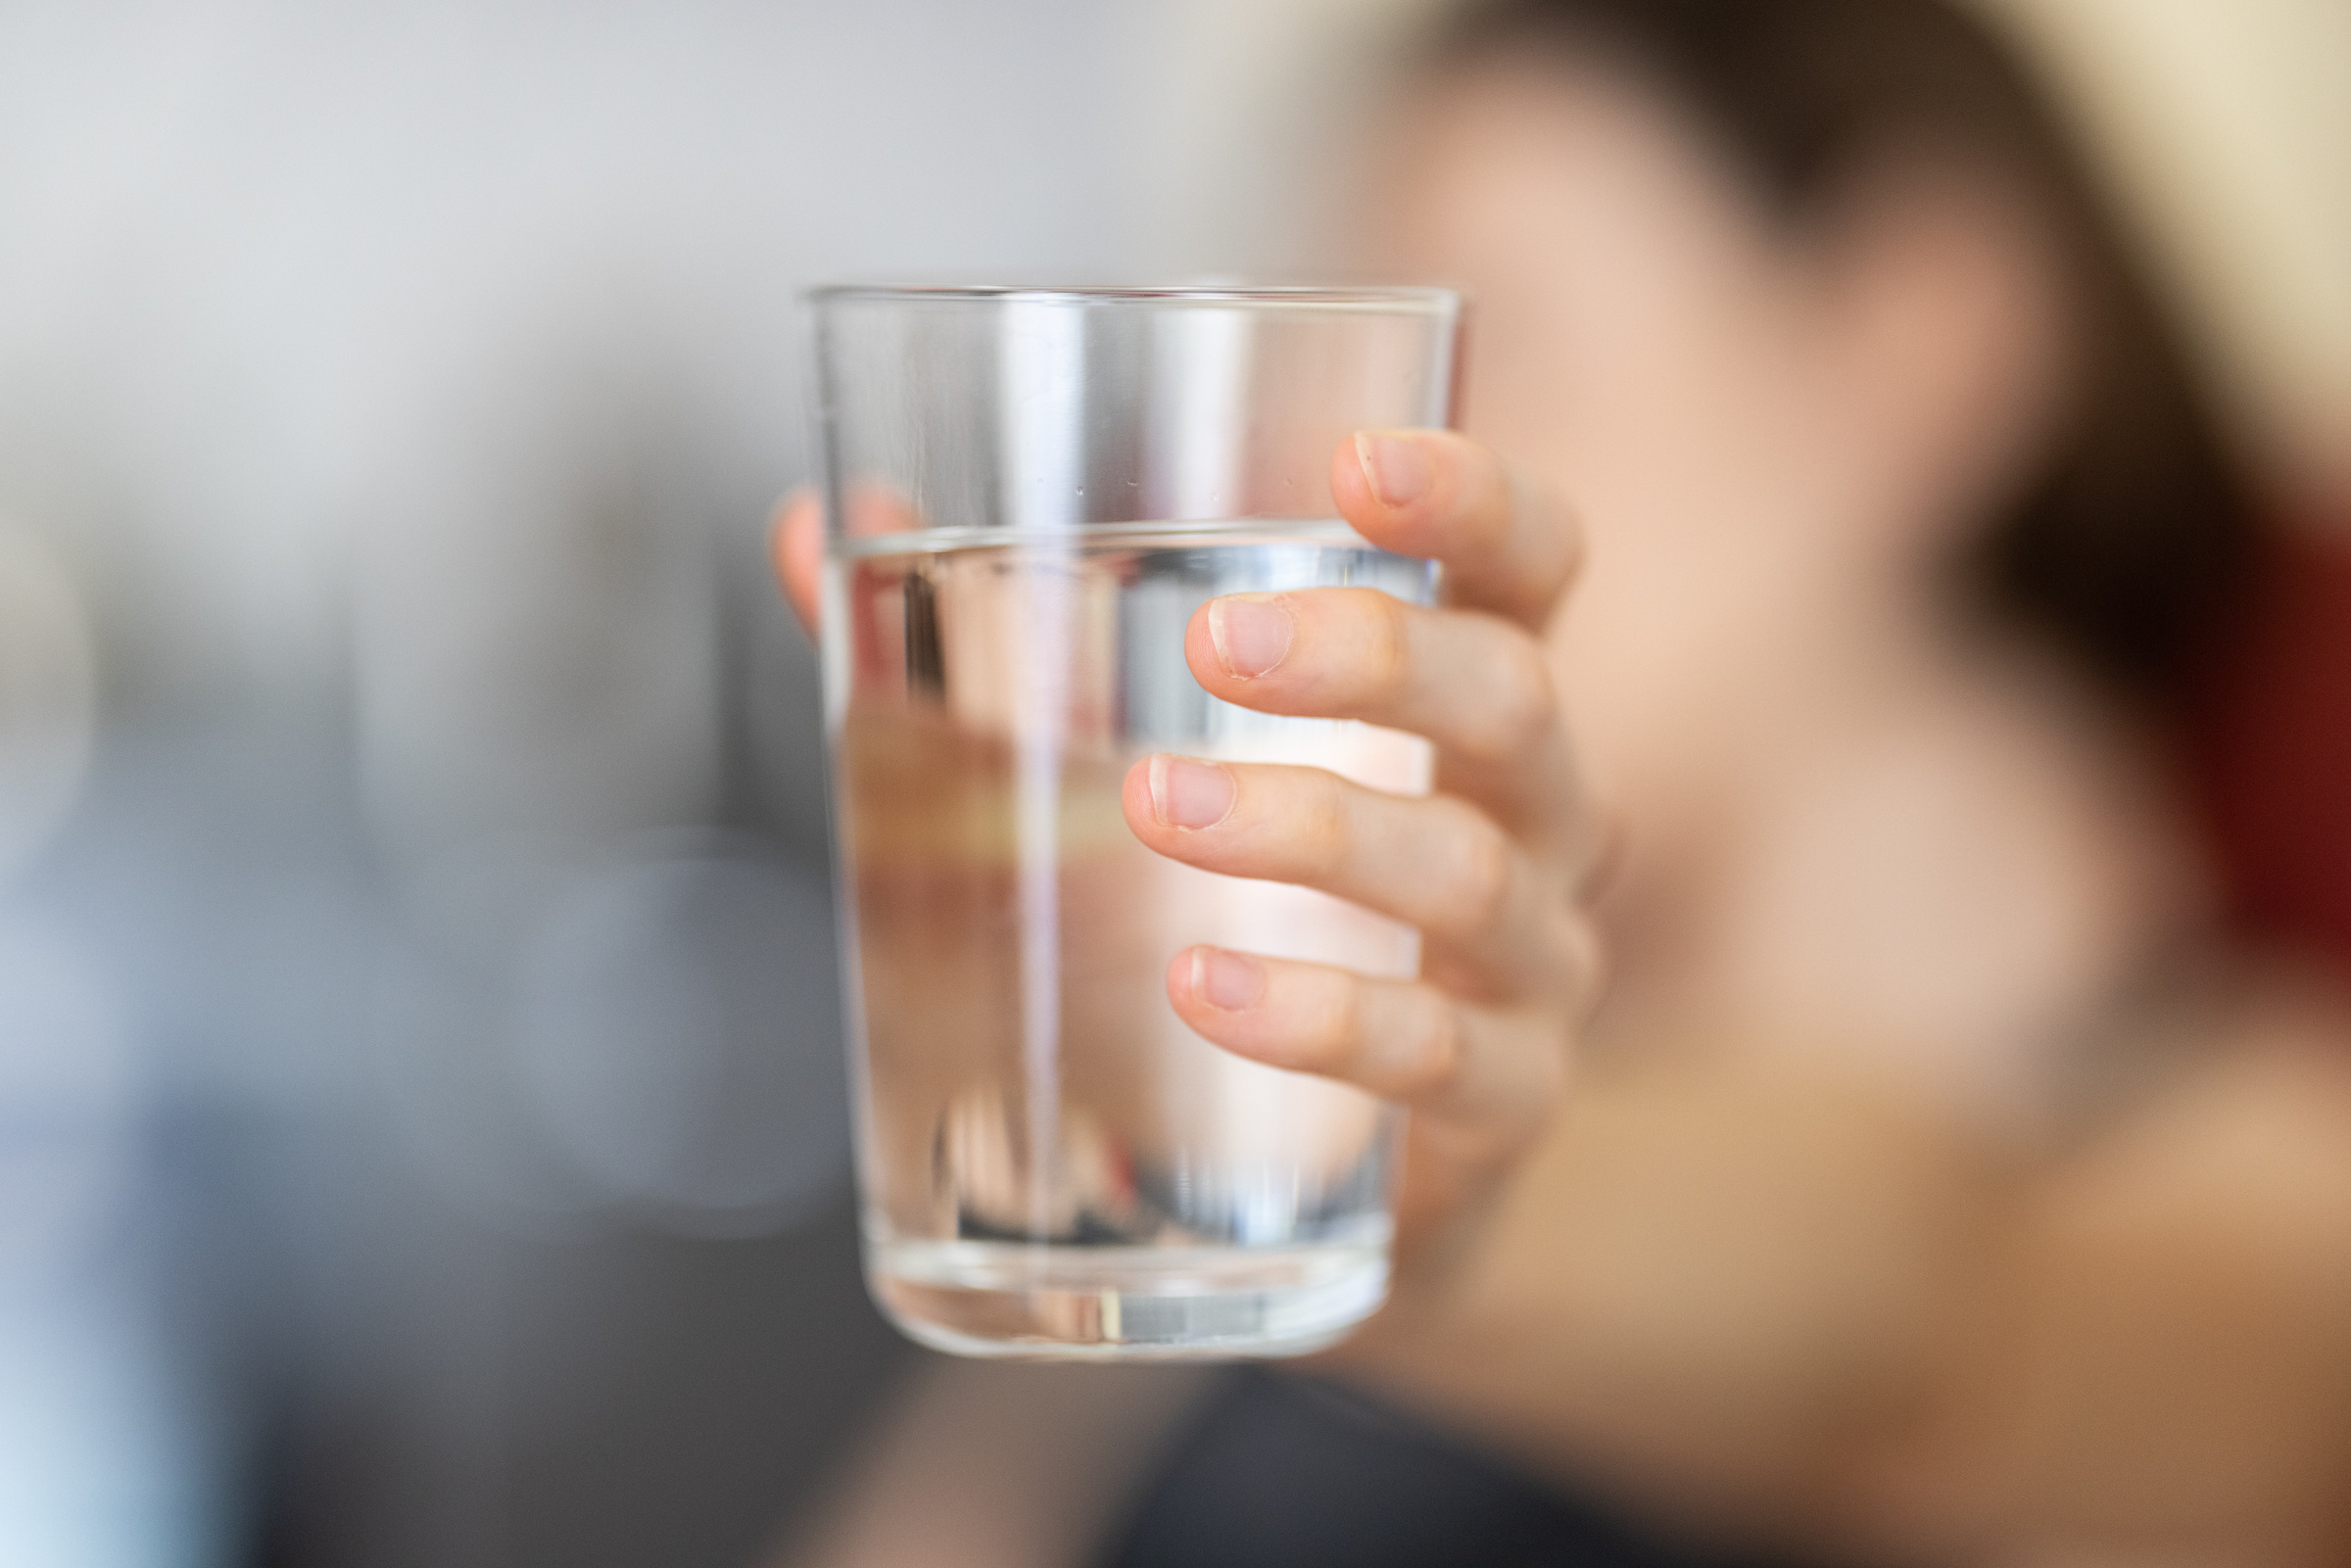 Тест со стаканом воды легко поможет определить, испытываете вы жажду или же голод. Фото © Unsplash